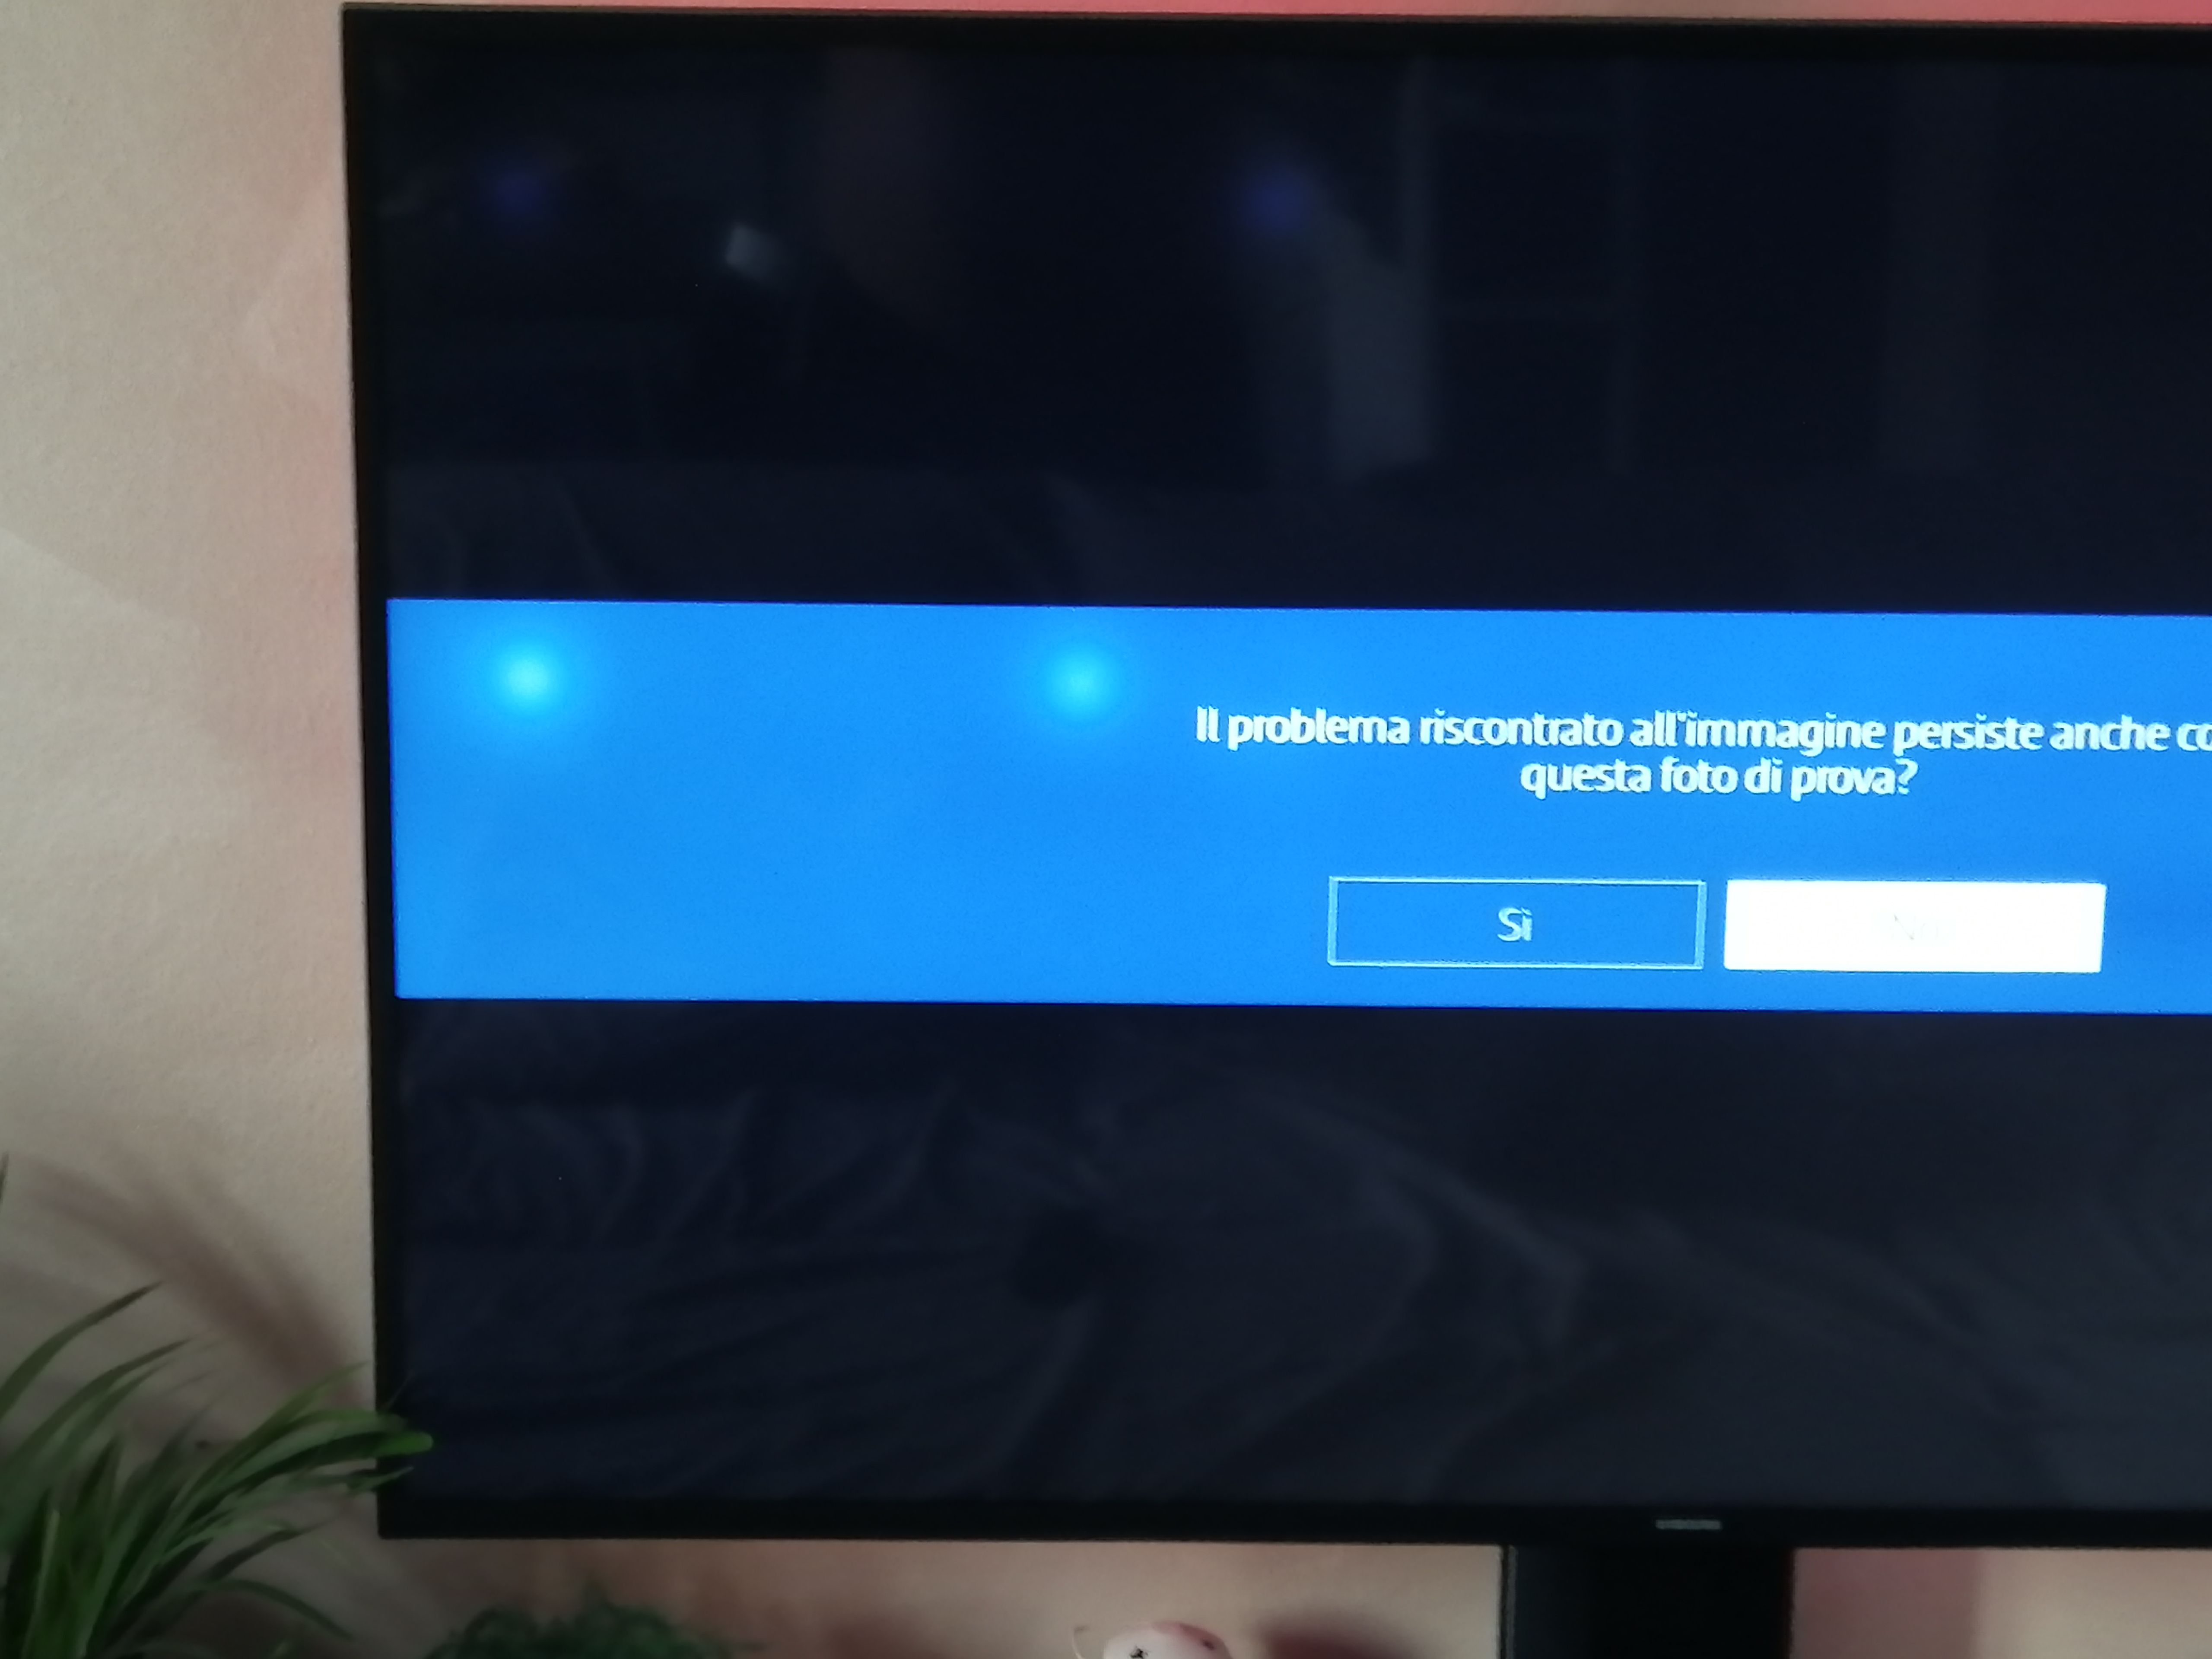 TV samsung macchie bianche su schermo - Samsung Community